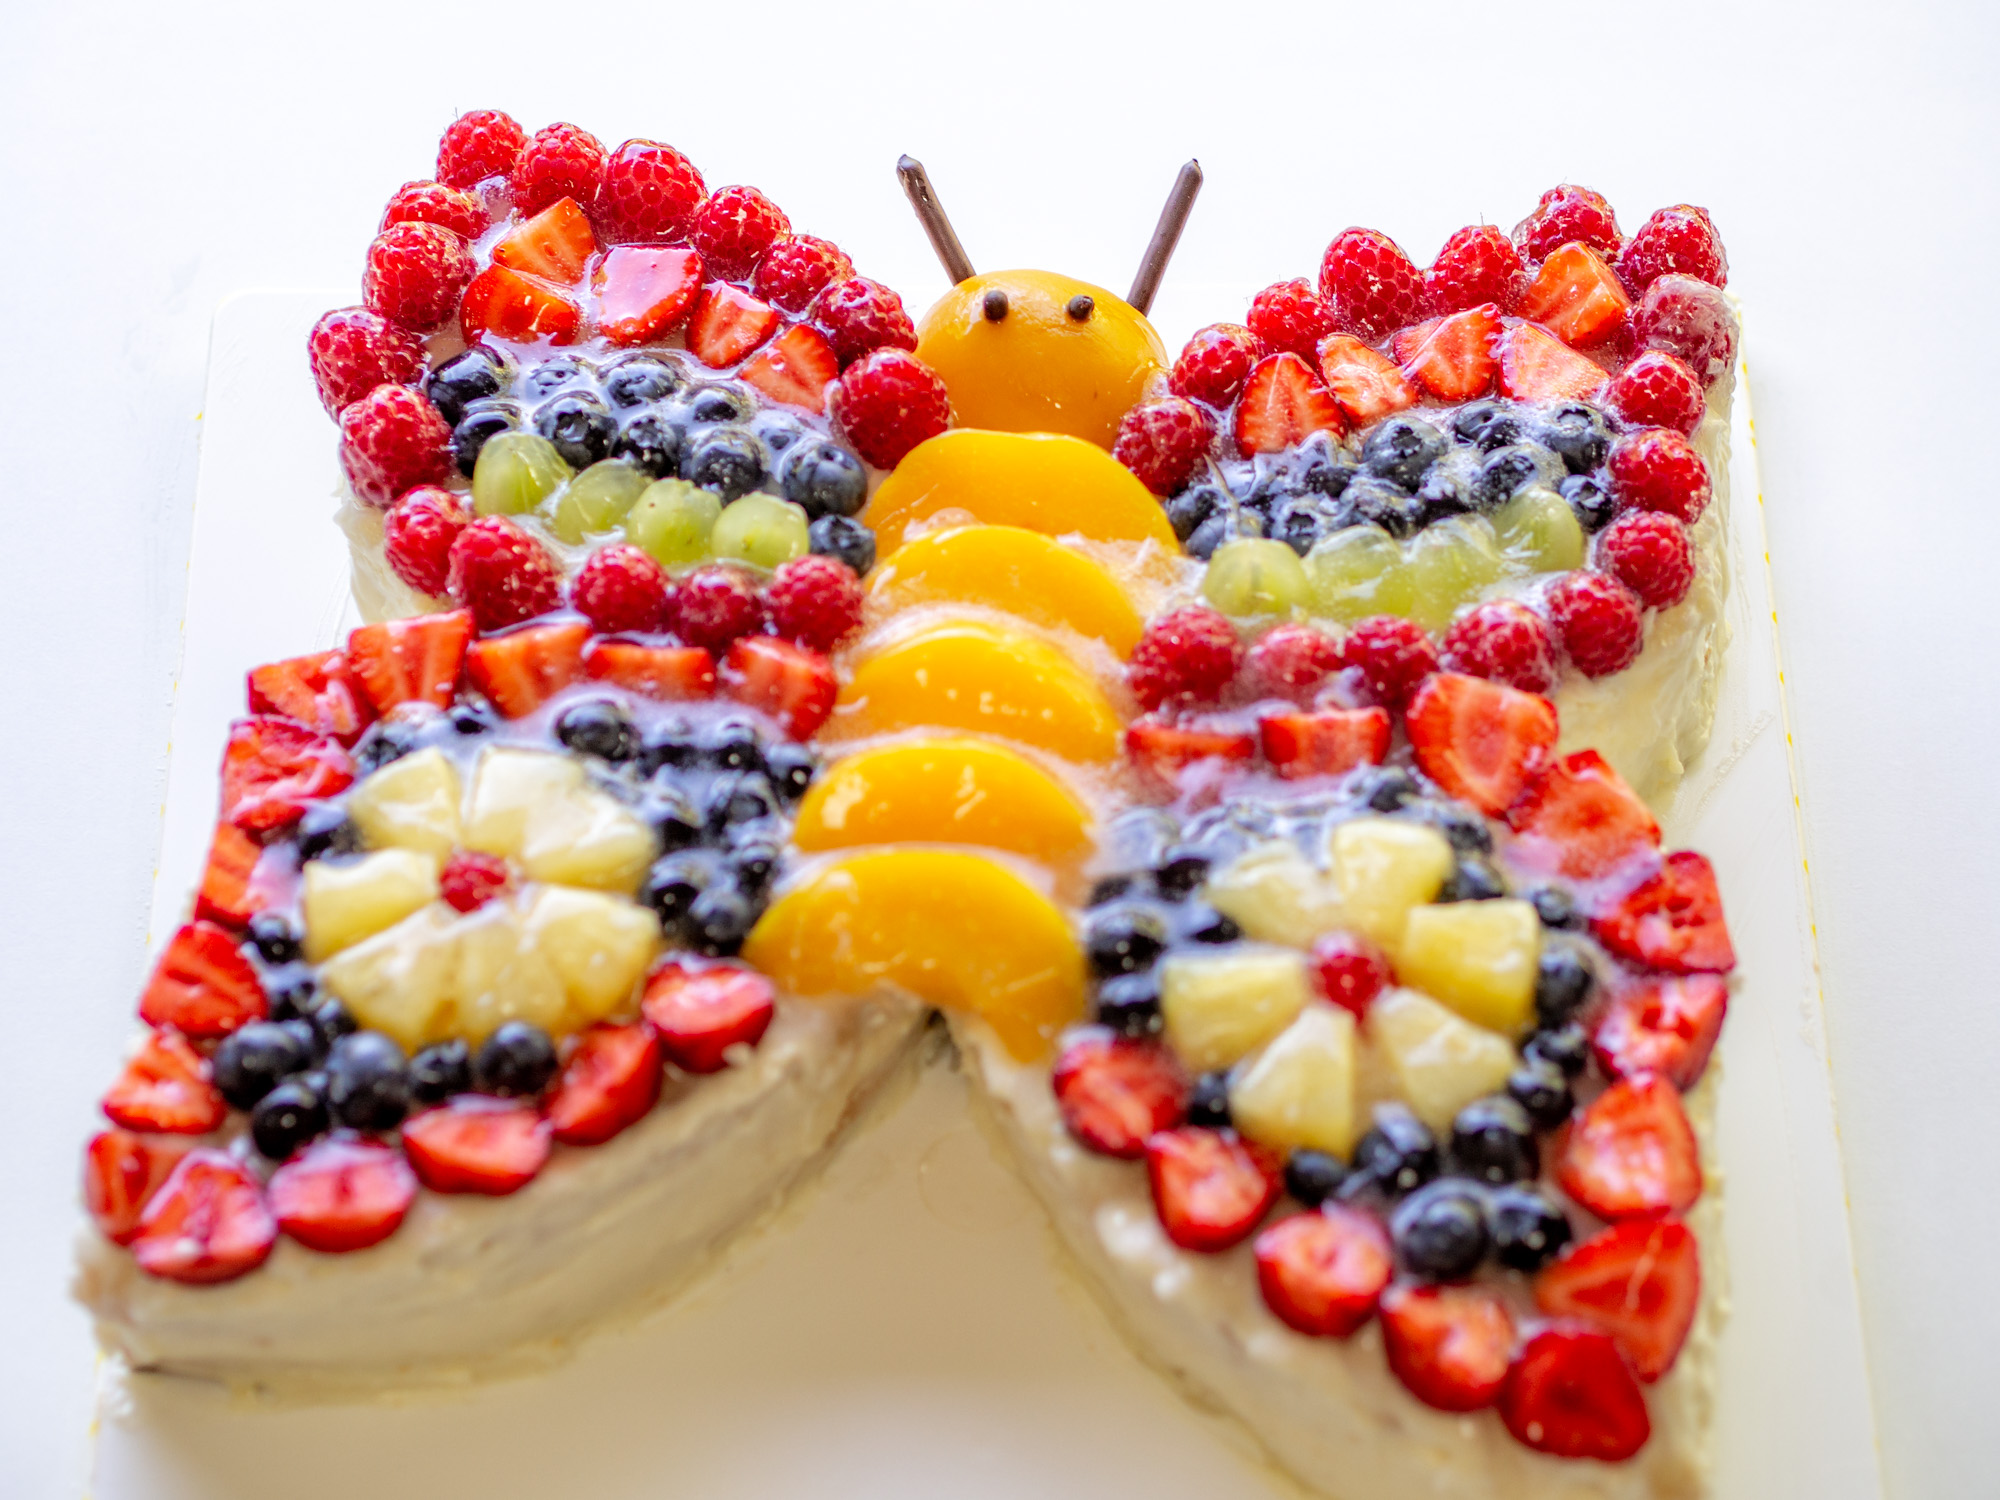 Bunter Schmetterlingstorte mit viel Obst dekoriert - perfekt für Kinder